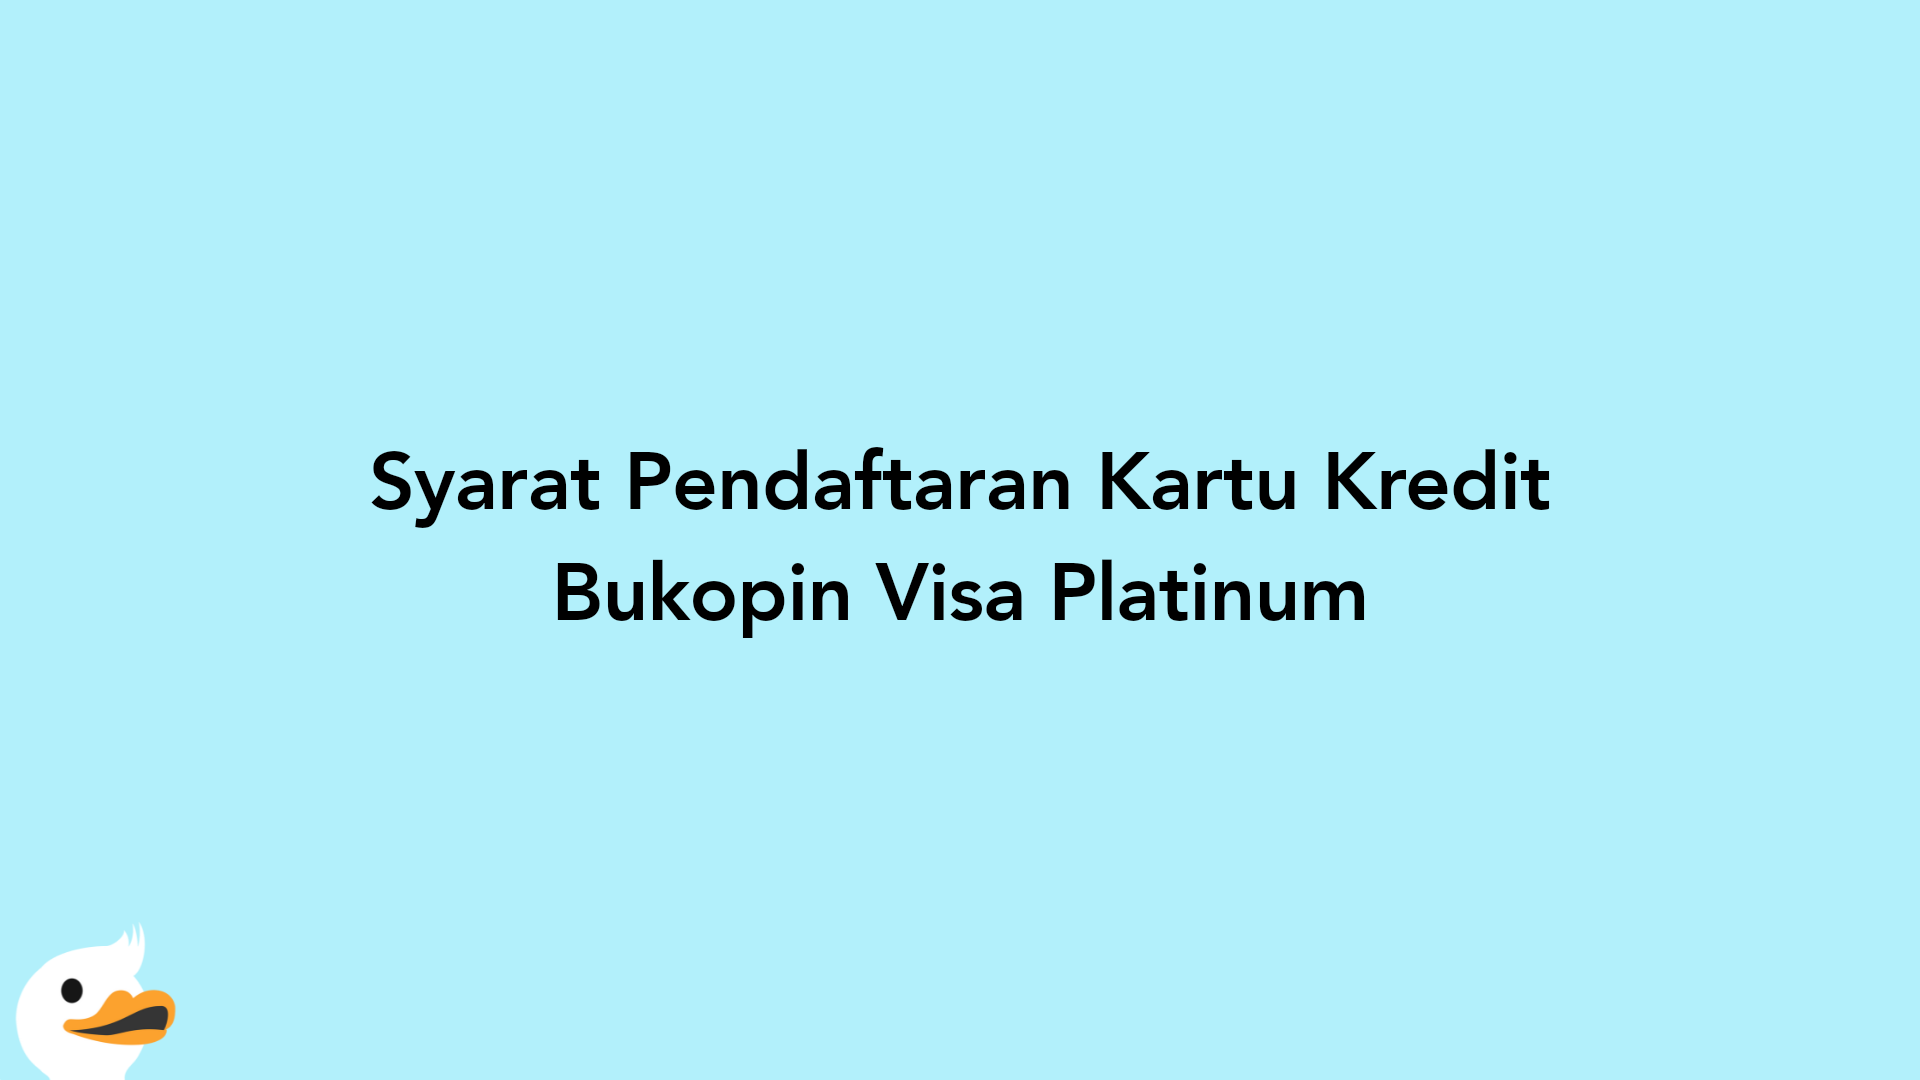 Syarat Pendaftaran Kartu Kredit Bukopin Visa Platinum